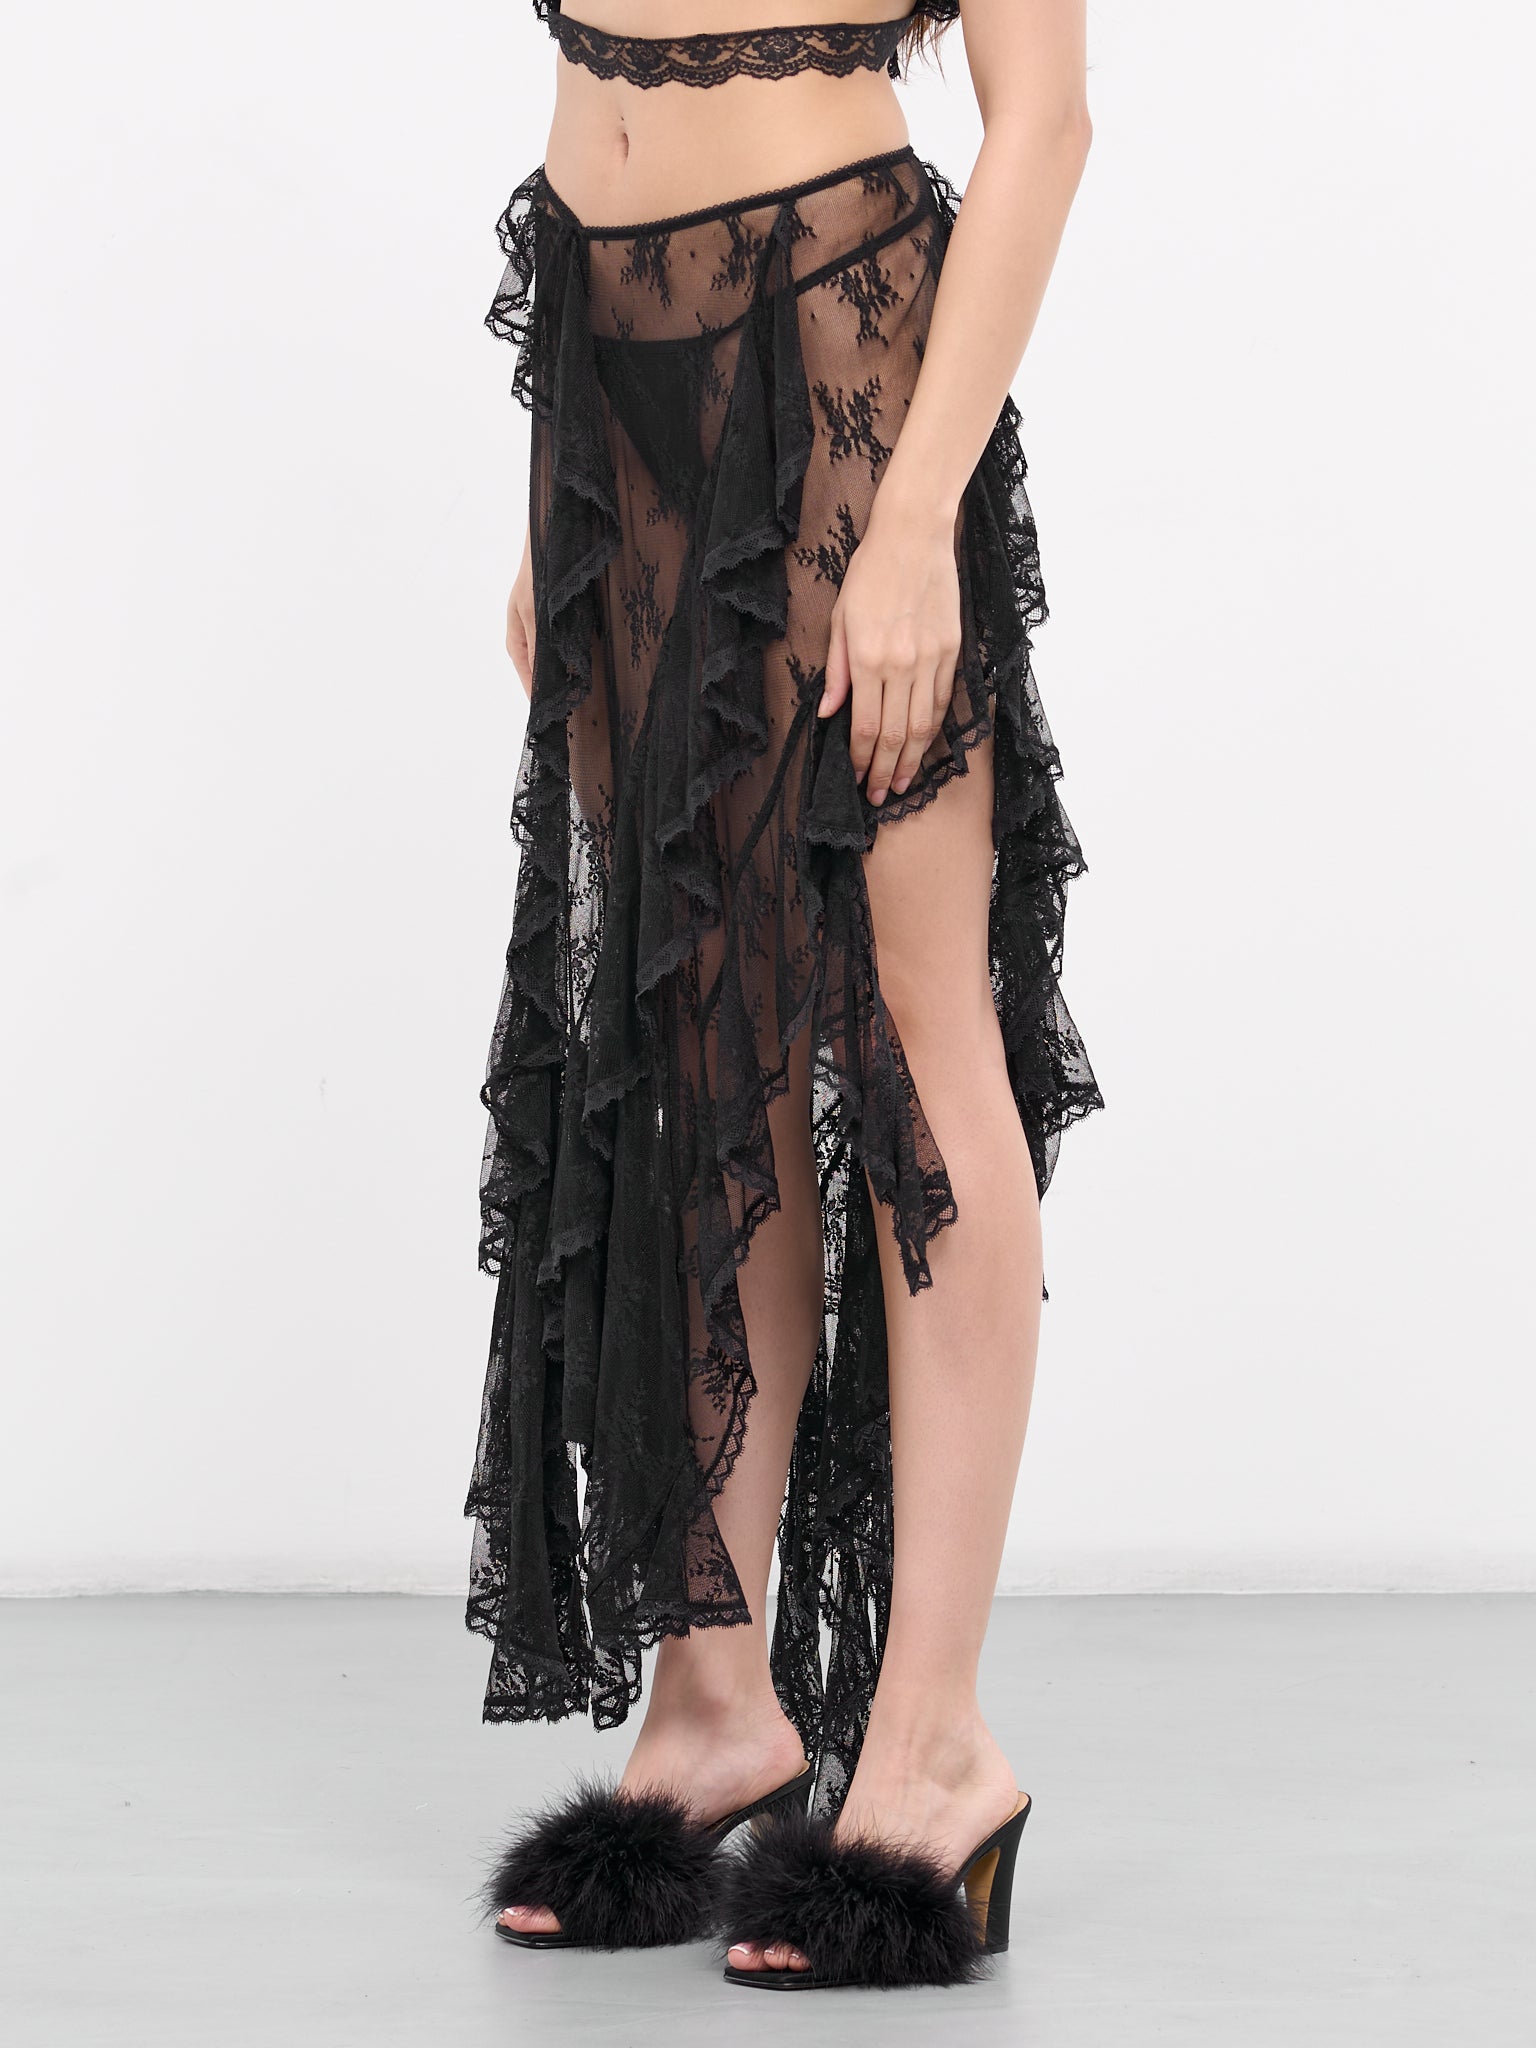 Lace Ruffled Skirt (00SK16BK-BLACK)